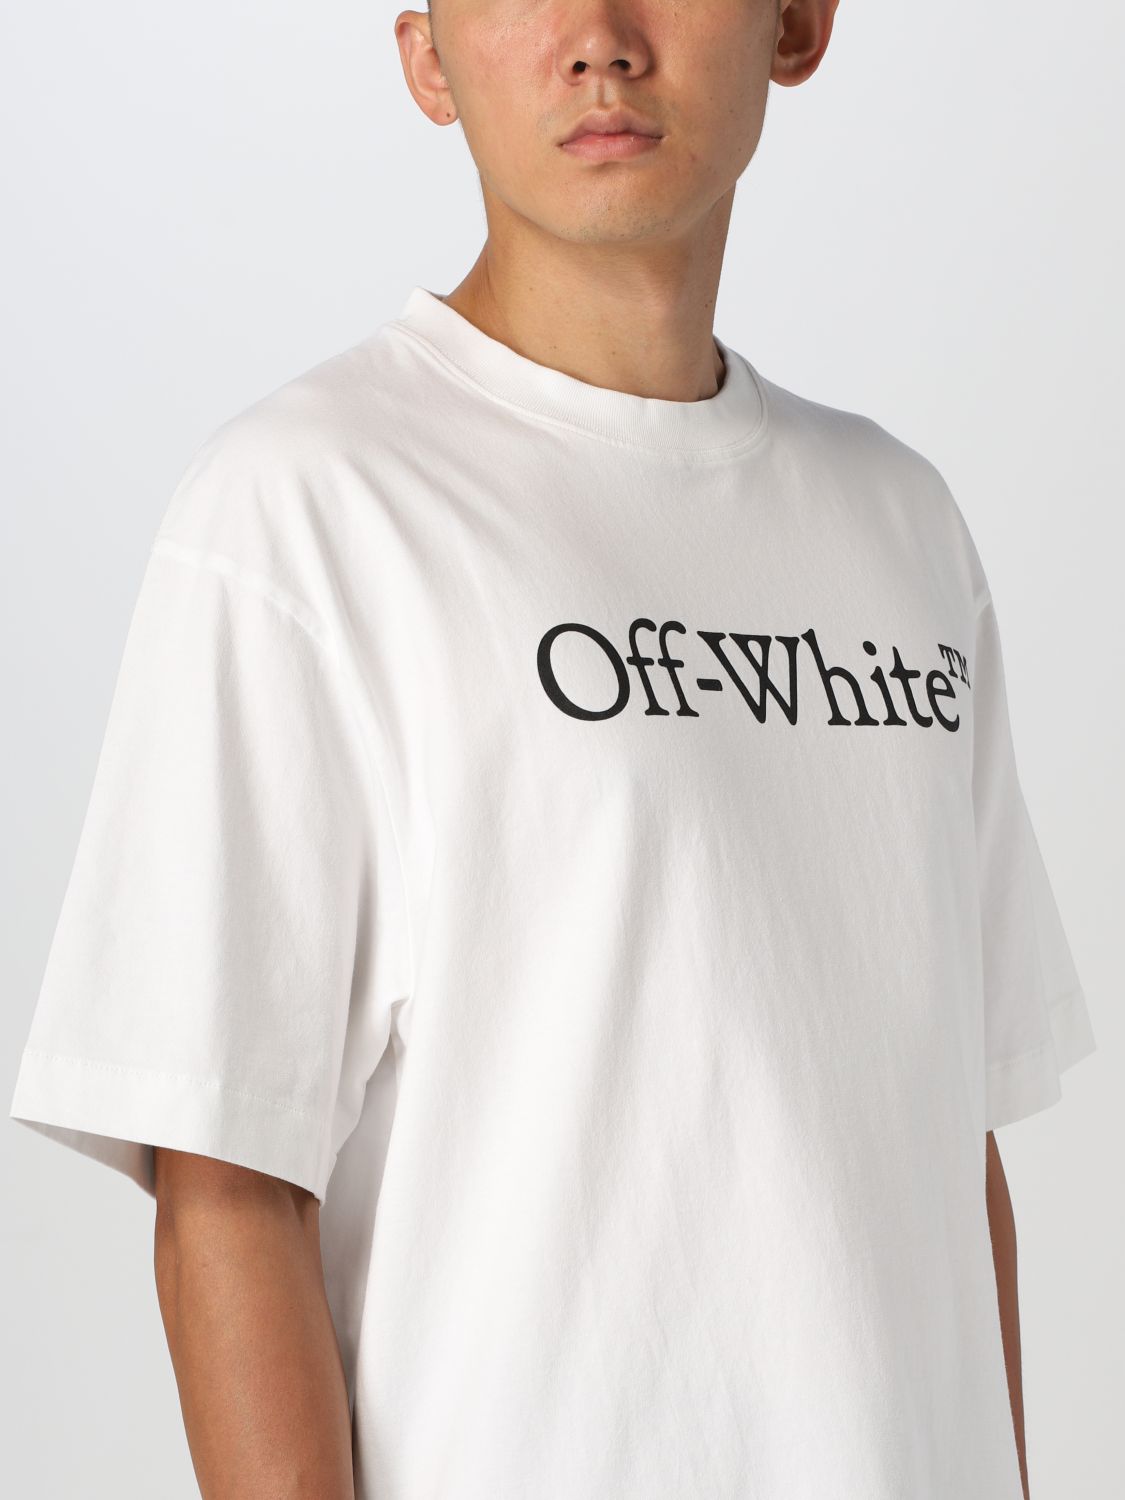 Off-White Tシャツメンズ